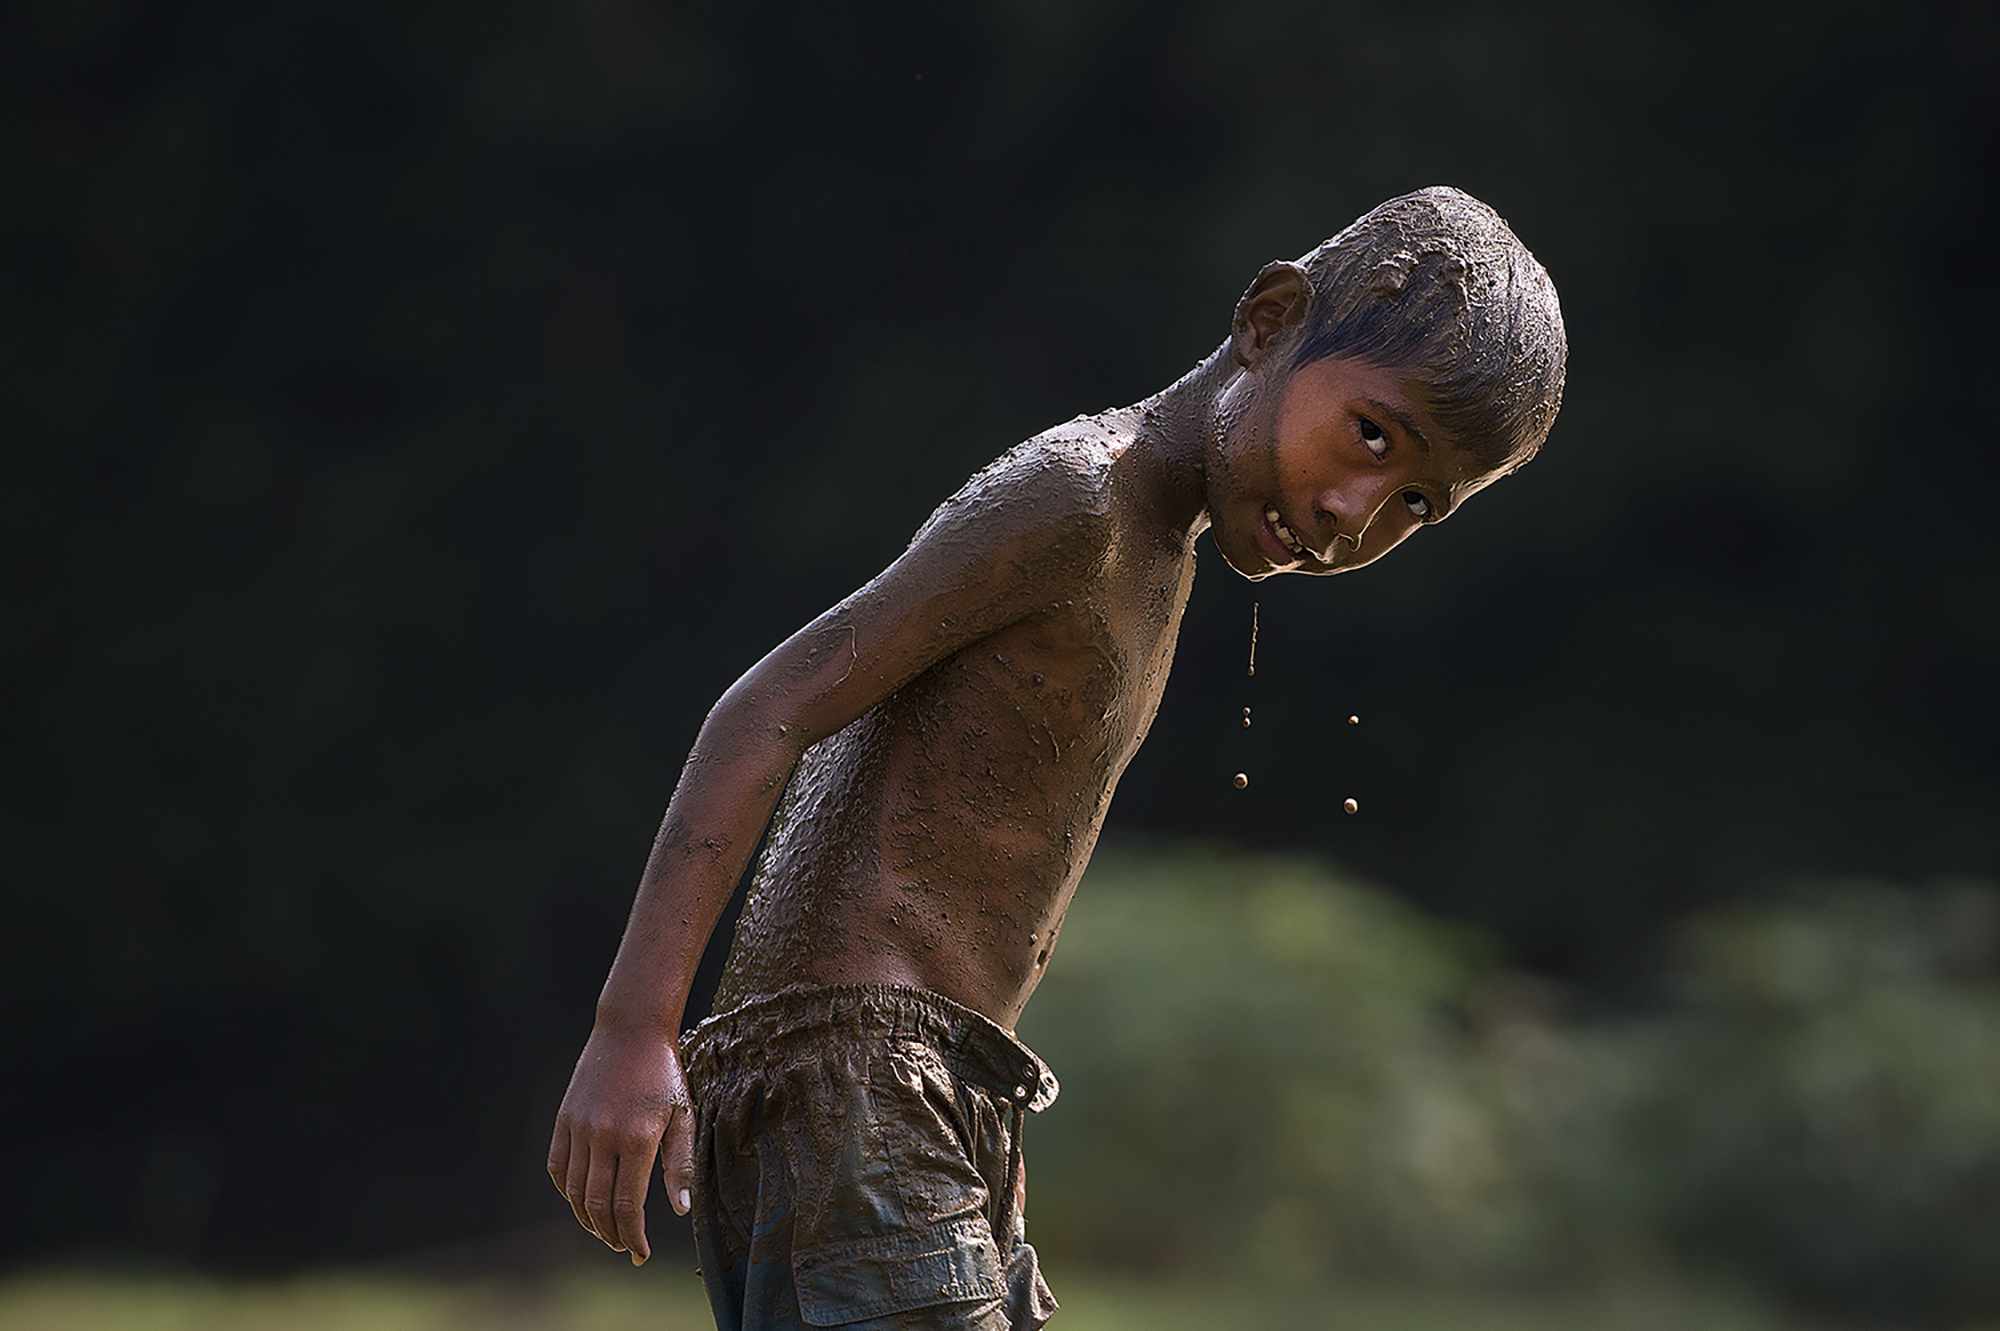 印尼摄影(72)泥孩子